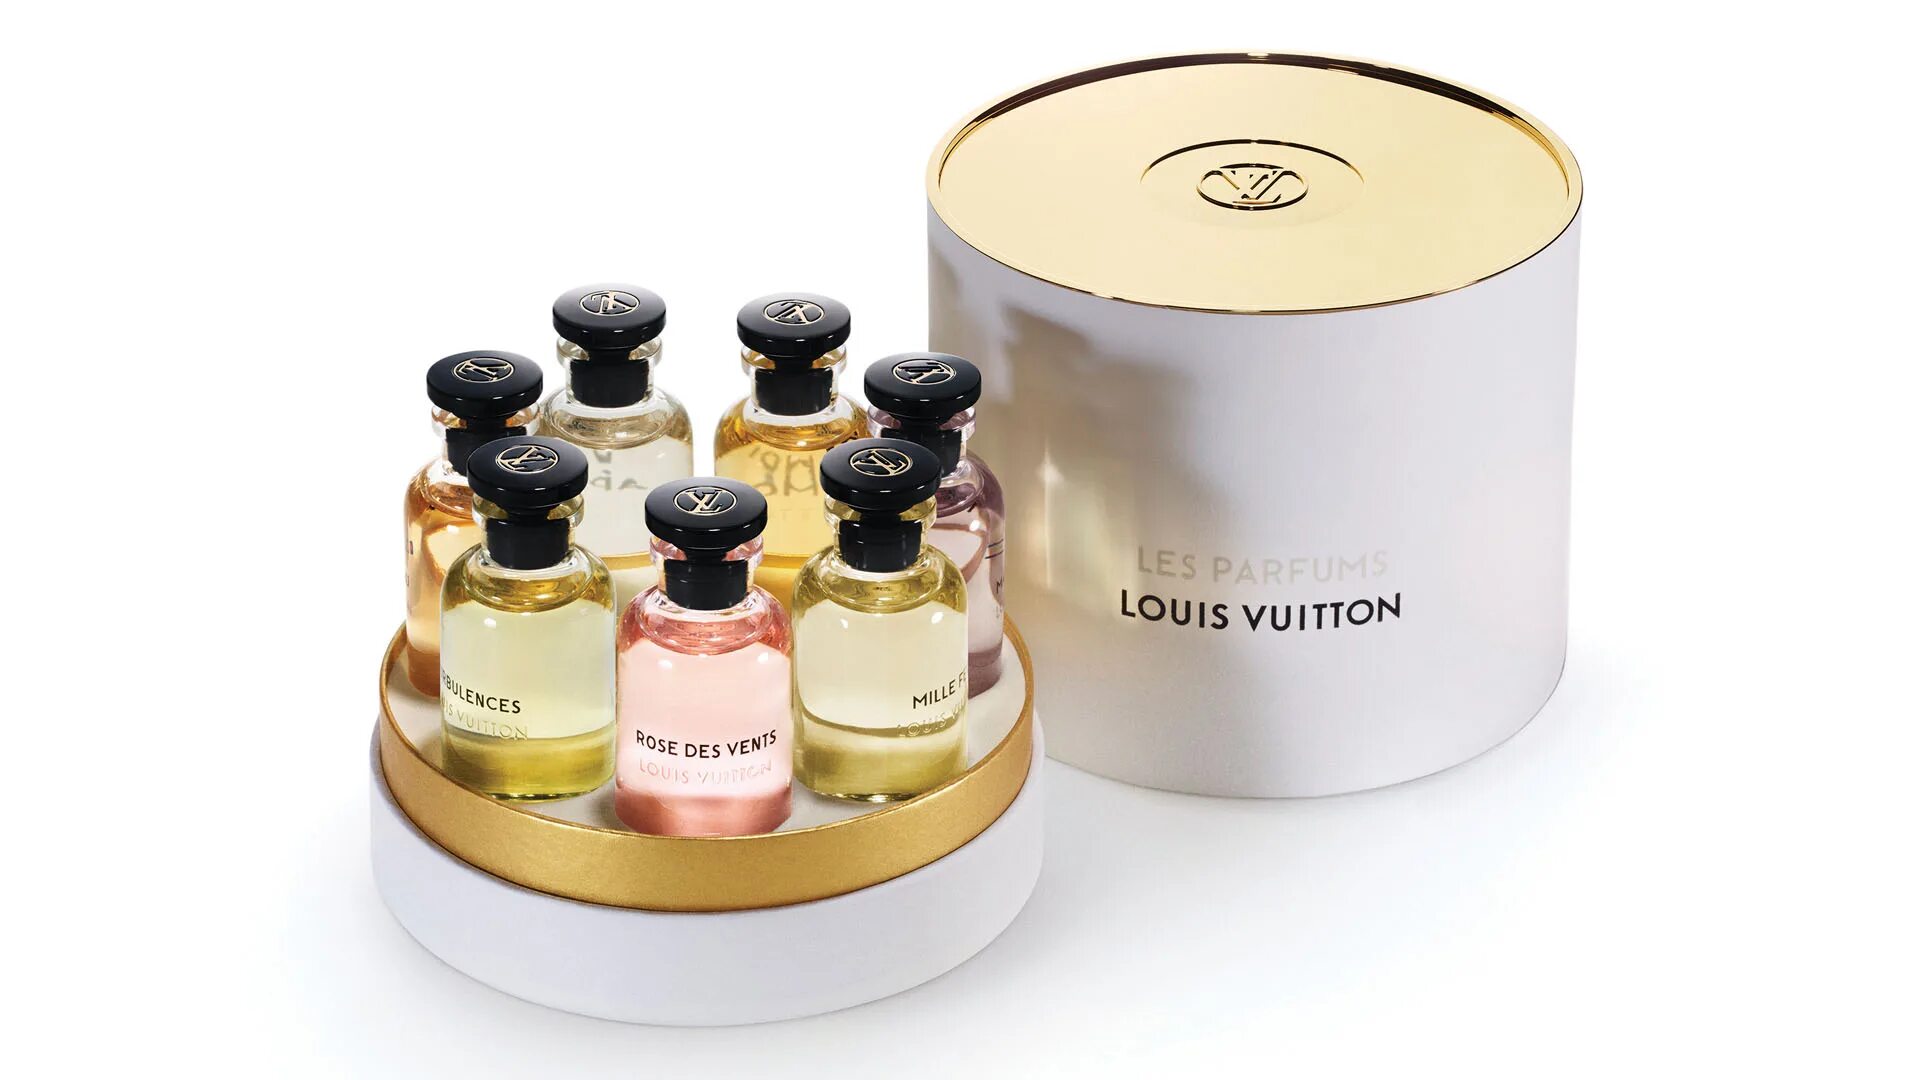 Набор духов оригинал. Louis Vuitton Parfums. Луи Виттон духи. Rose des Vents Louis Vuitton для женщин. Бокс с сэмплами парфюмерии.